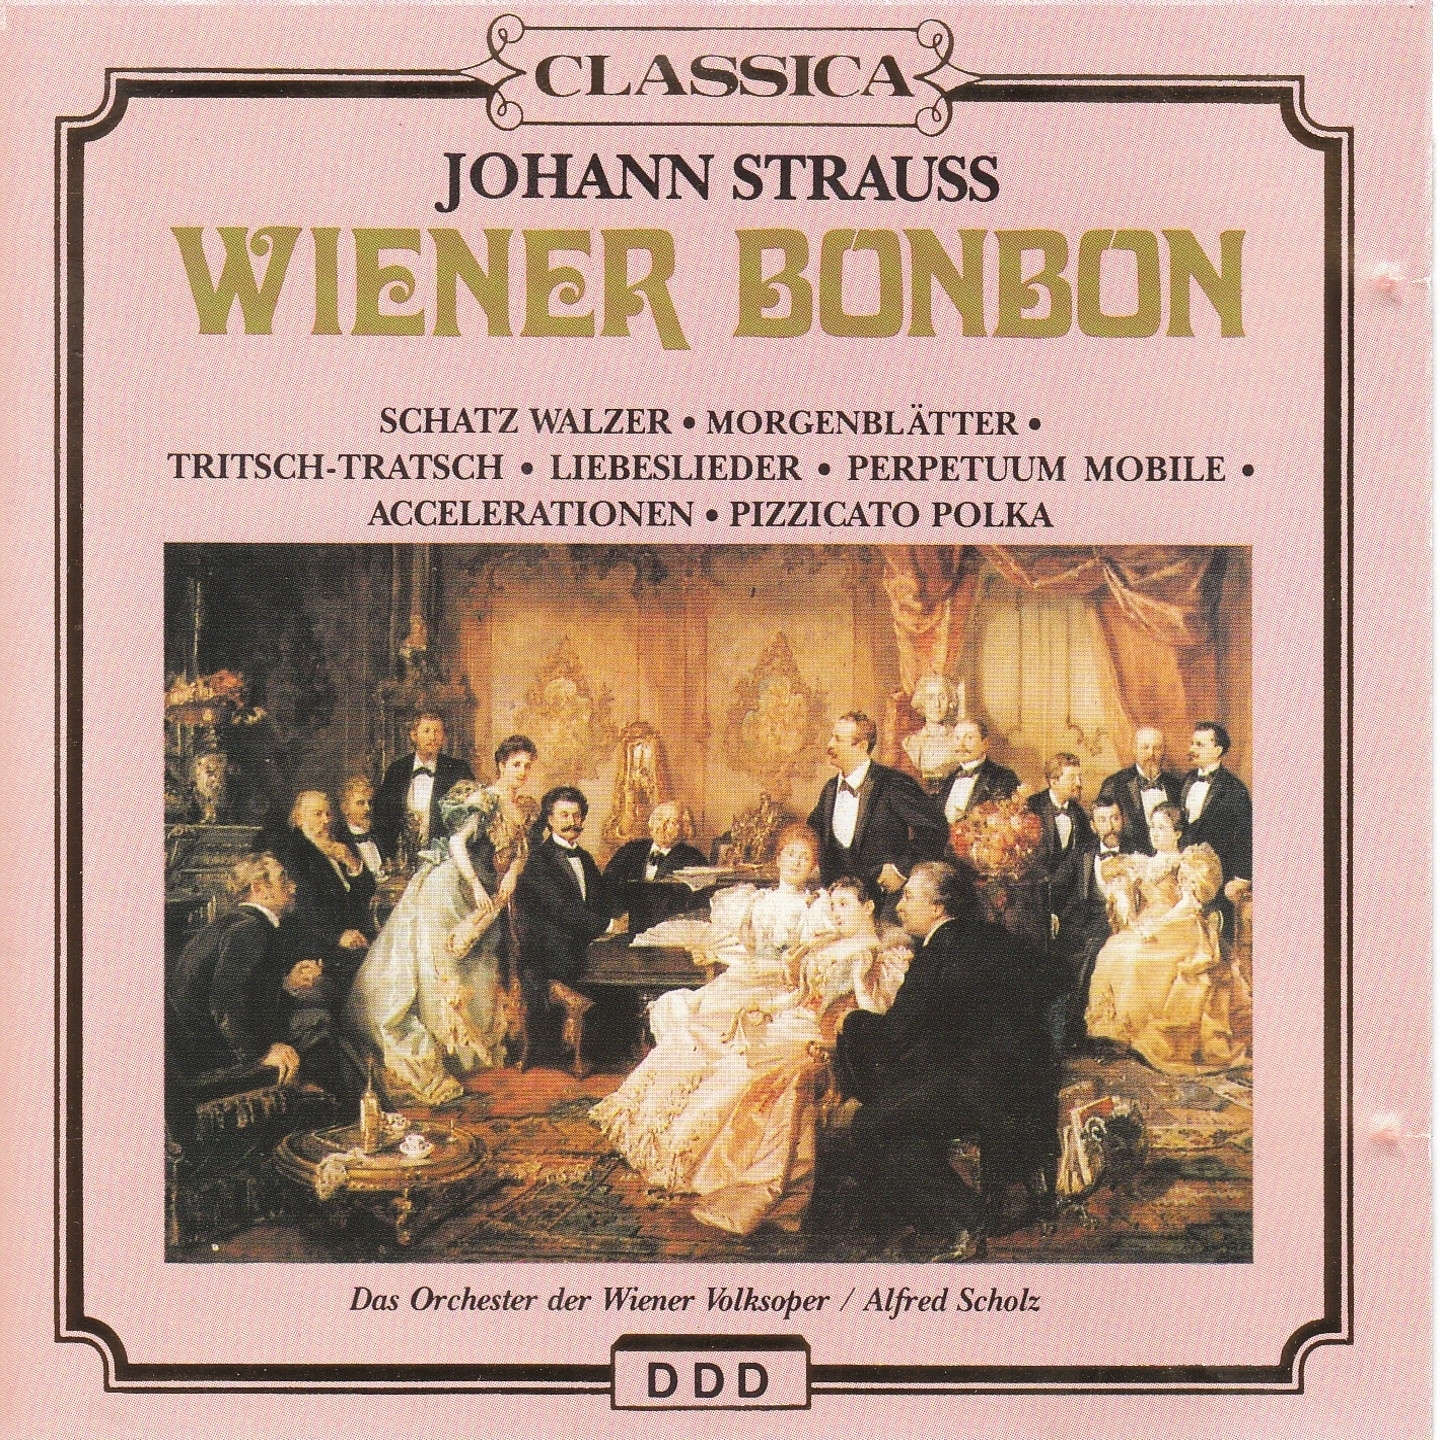 J. Strauss II: Wiener Bonbon